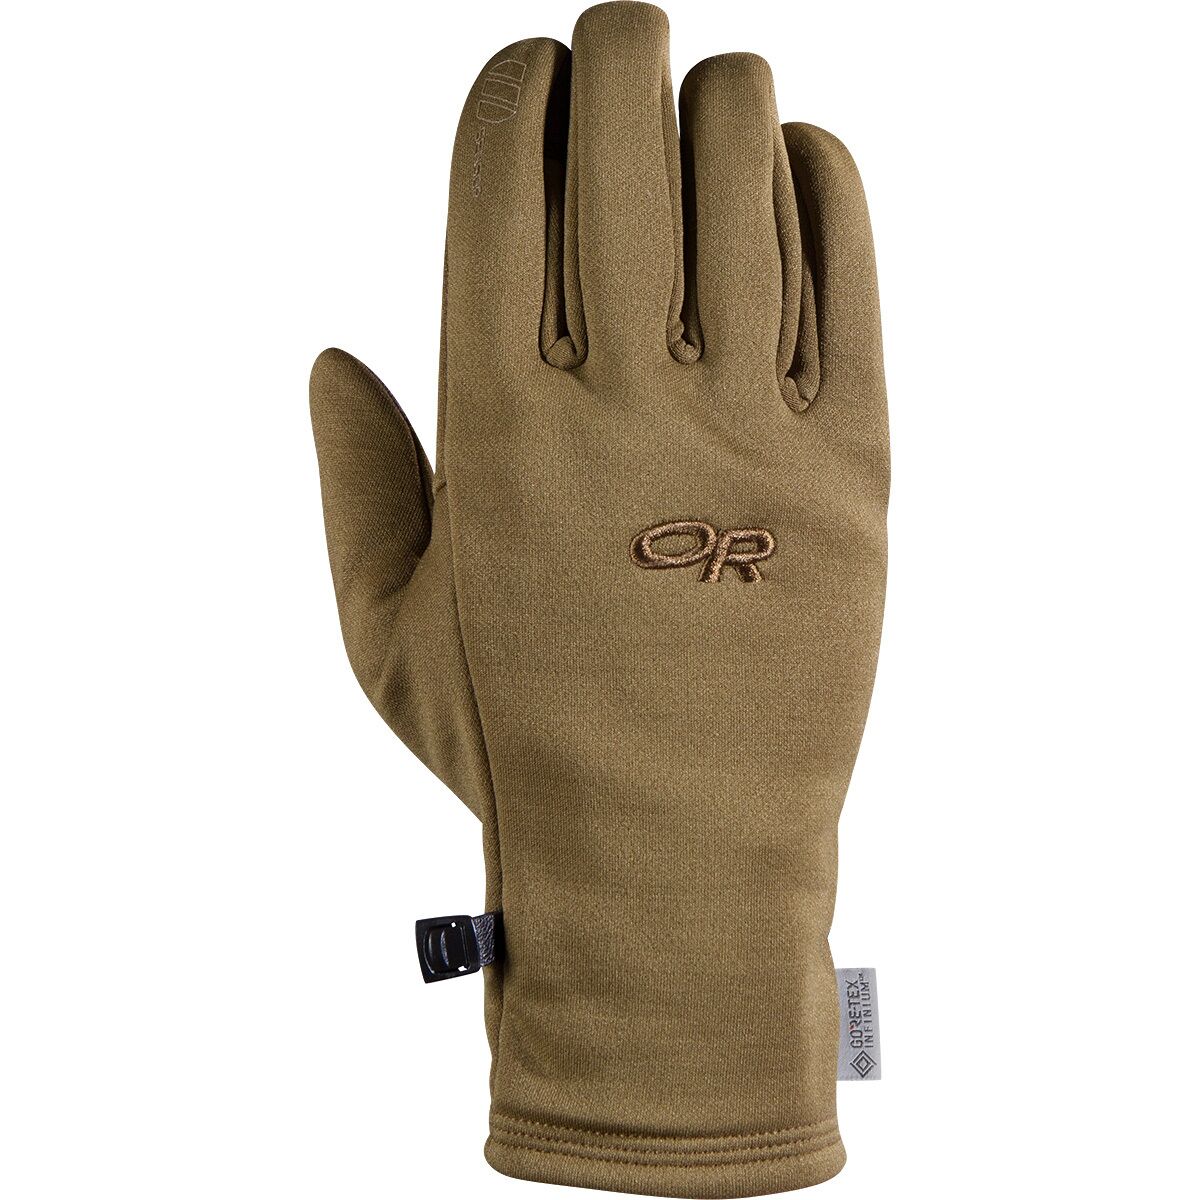 Outdoor Research Backstop Sensor Glove - Men's